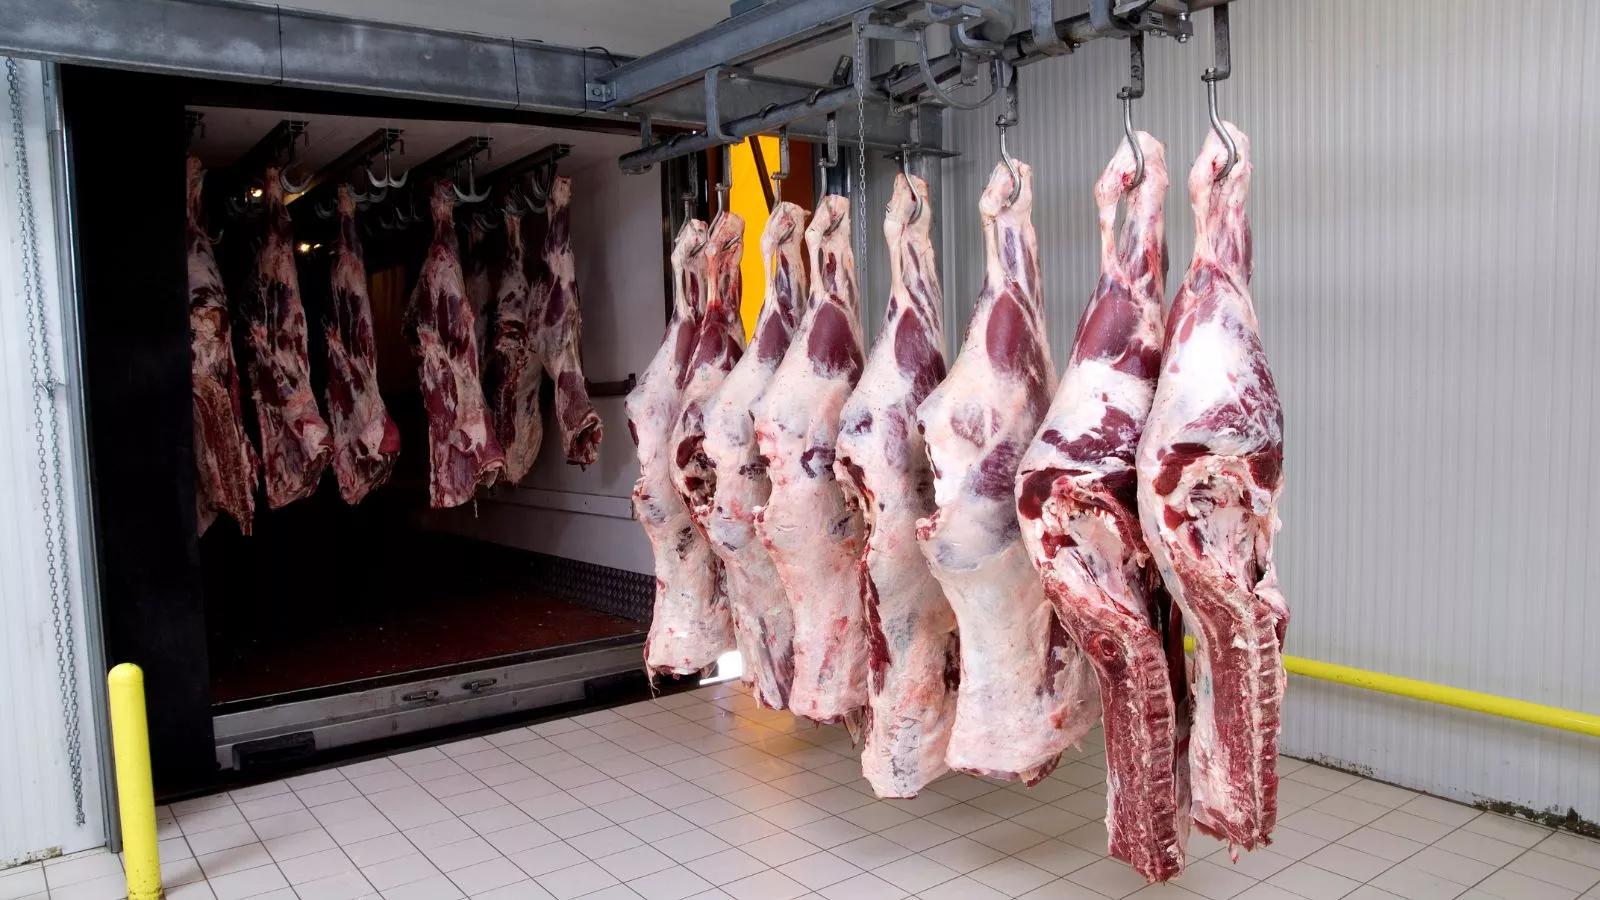 nuevas normas fiscalizacion en matatderos carne vacuna - Qué significa vacuno categoria V